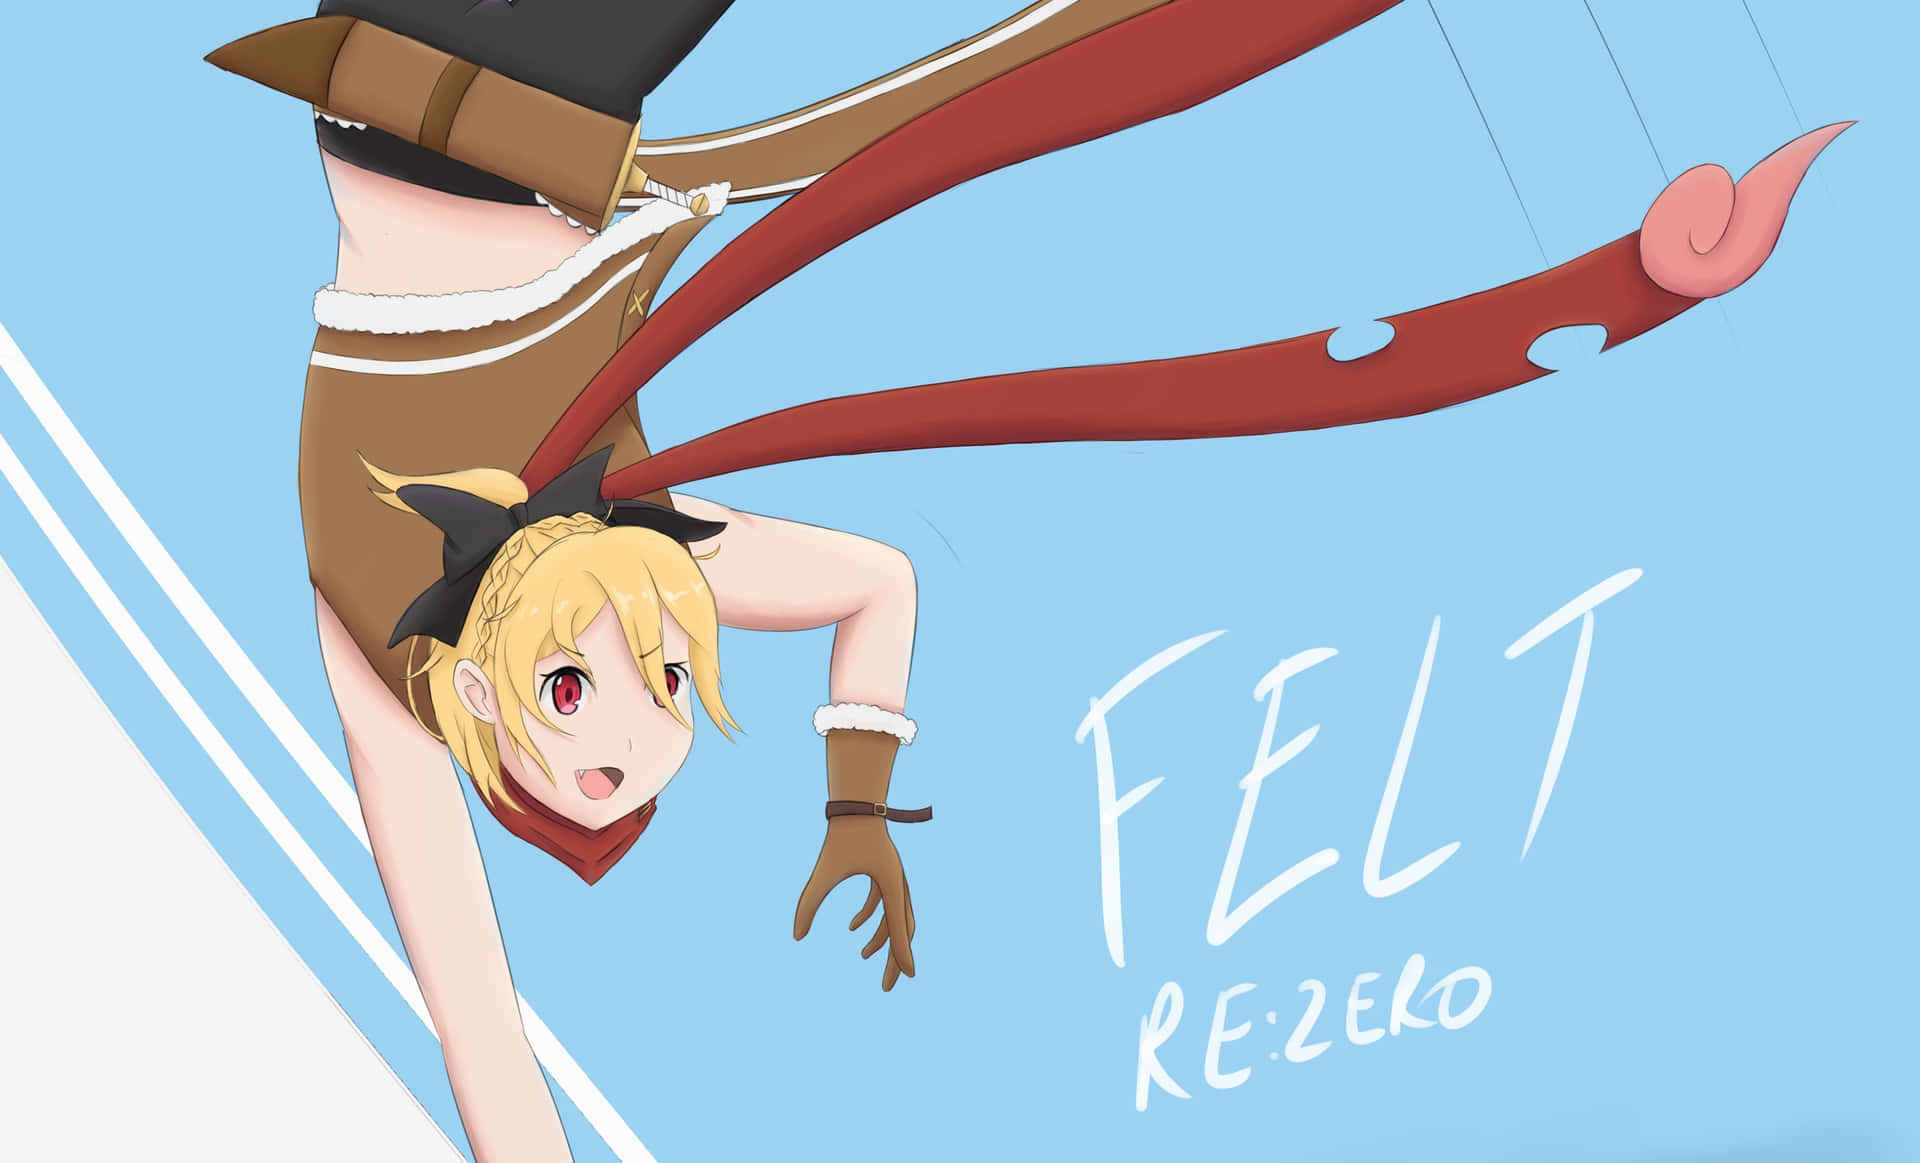 Captivating Felt from Re:Zero Anime Wallpaper Wallpaper